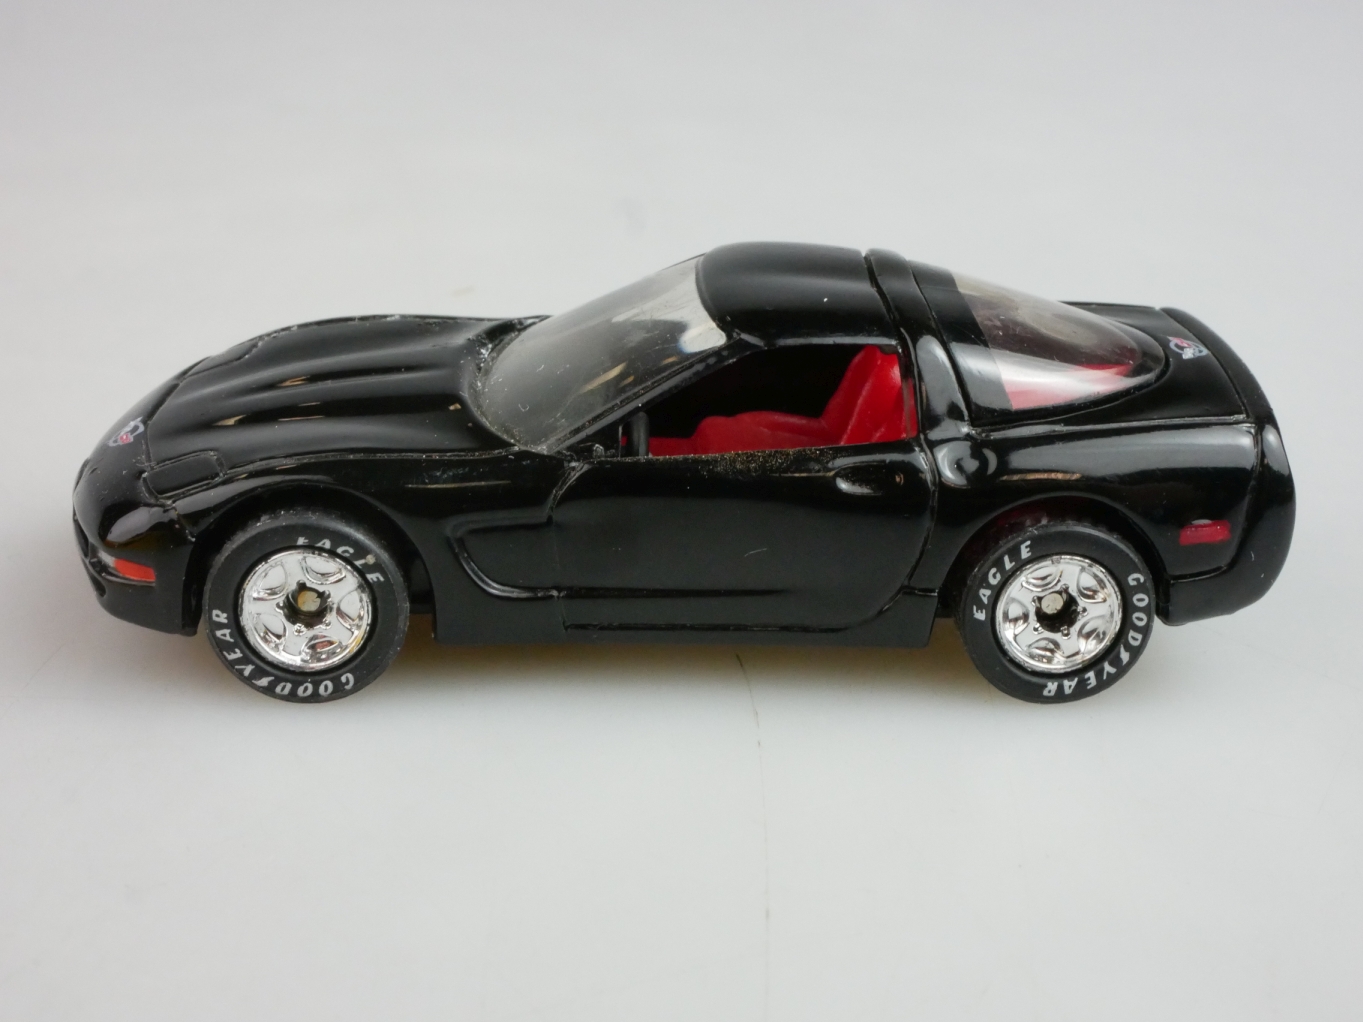 1997 Corvette (04-F) - 96664